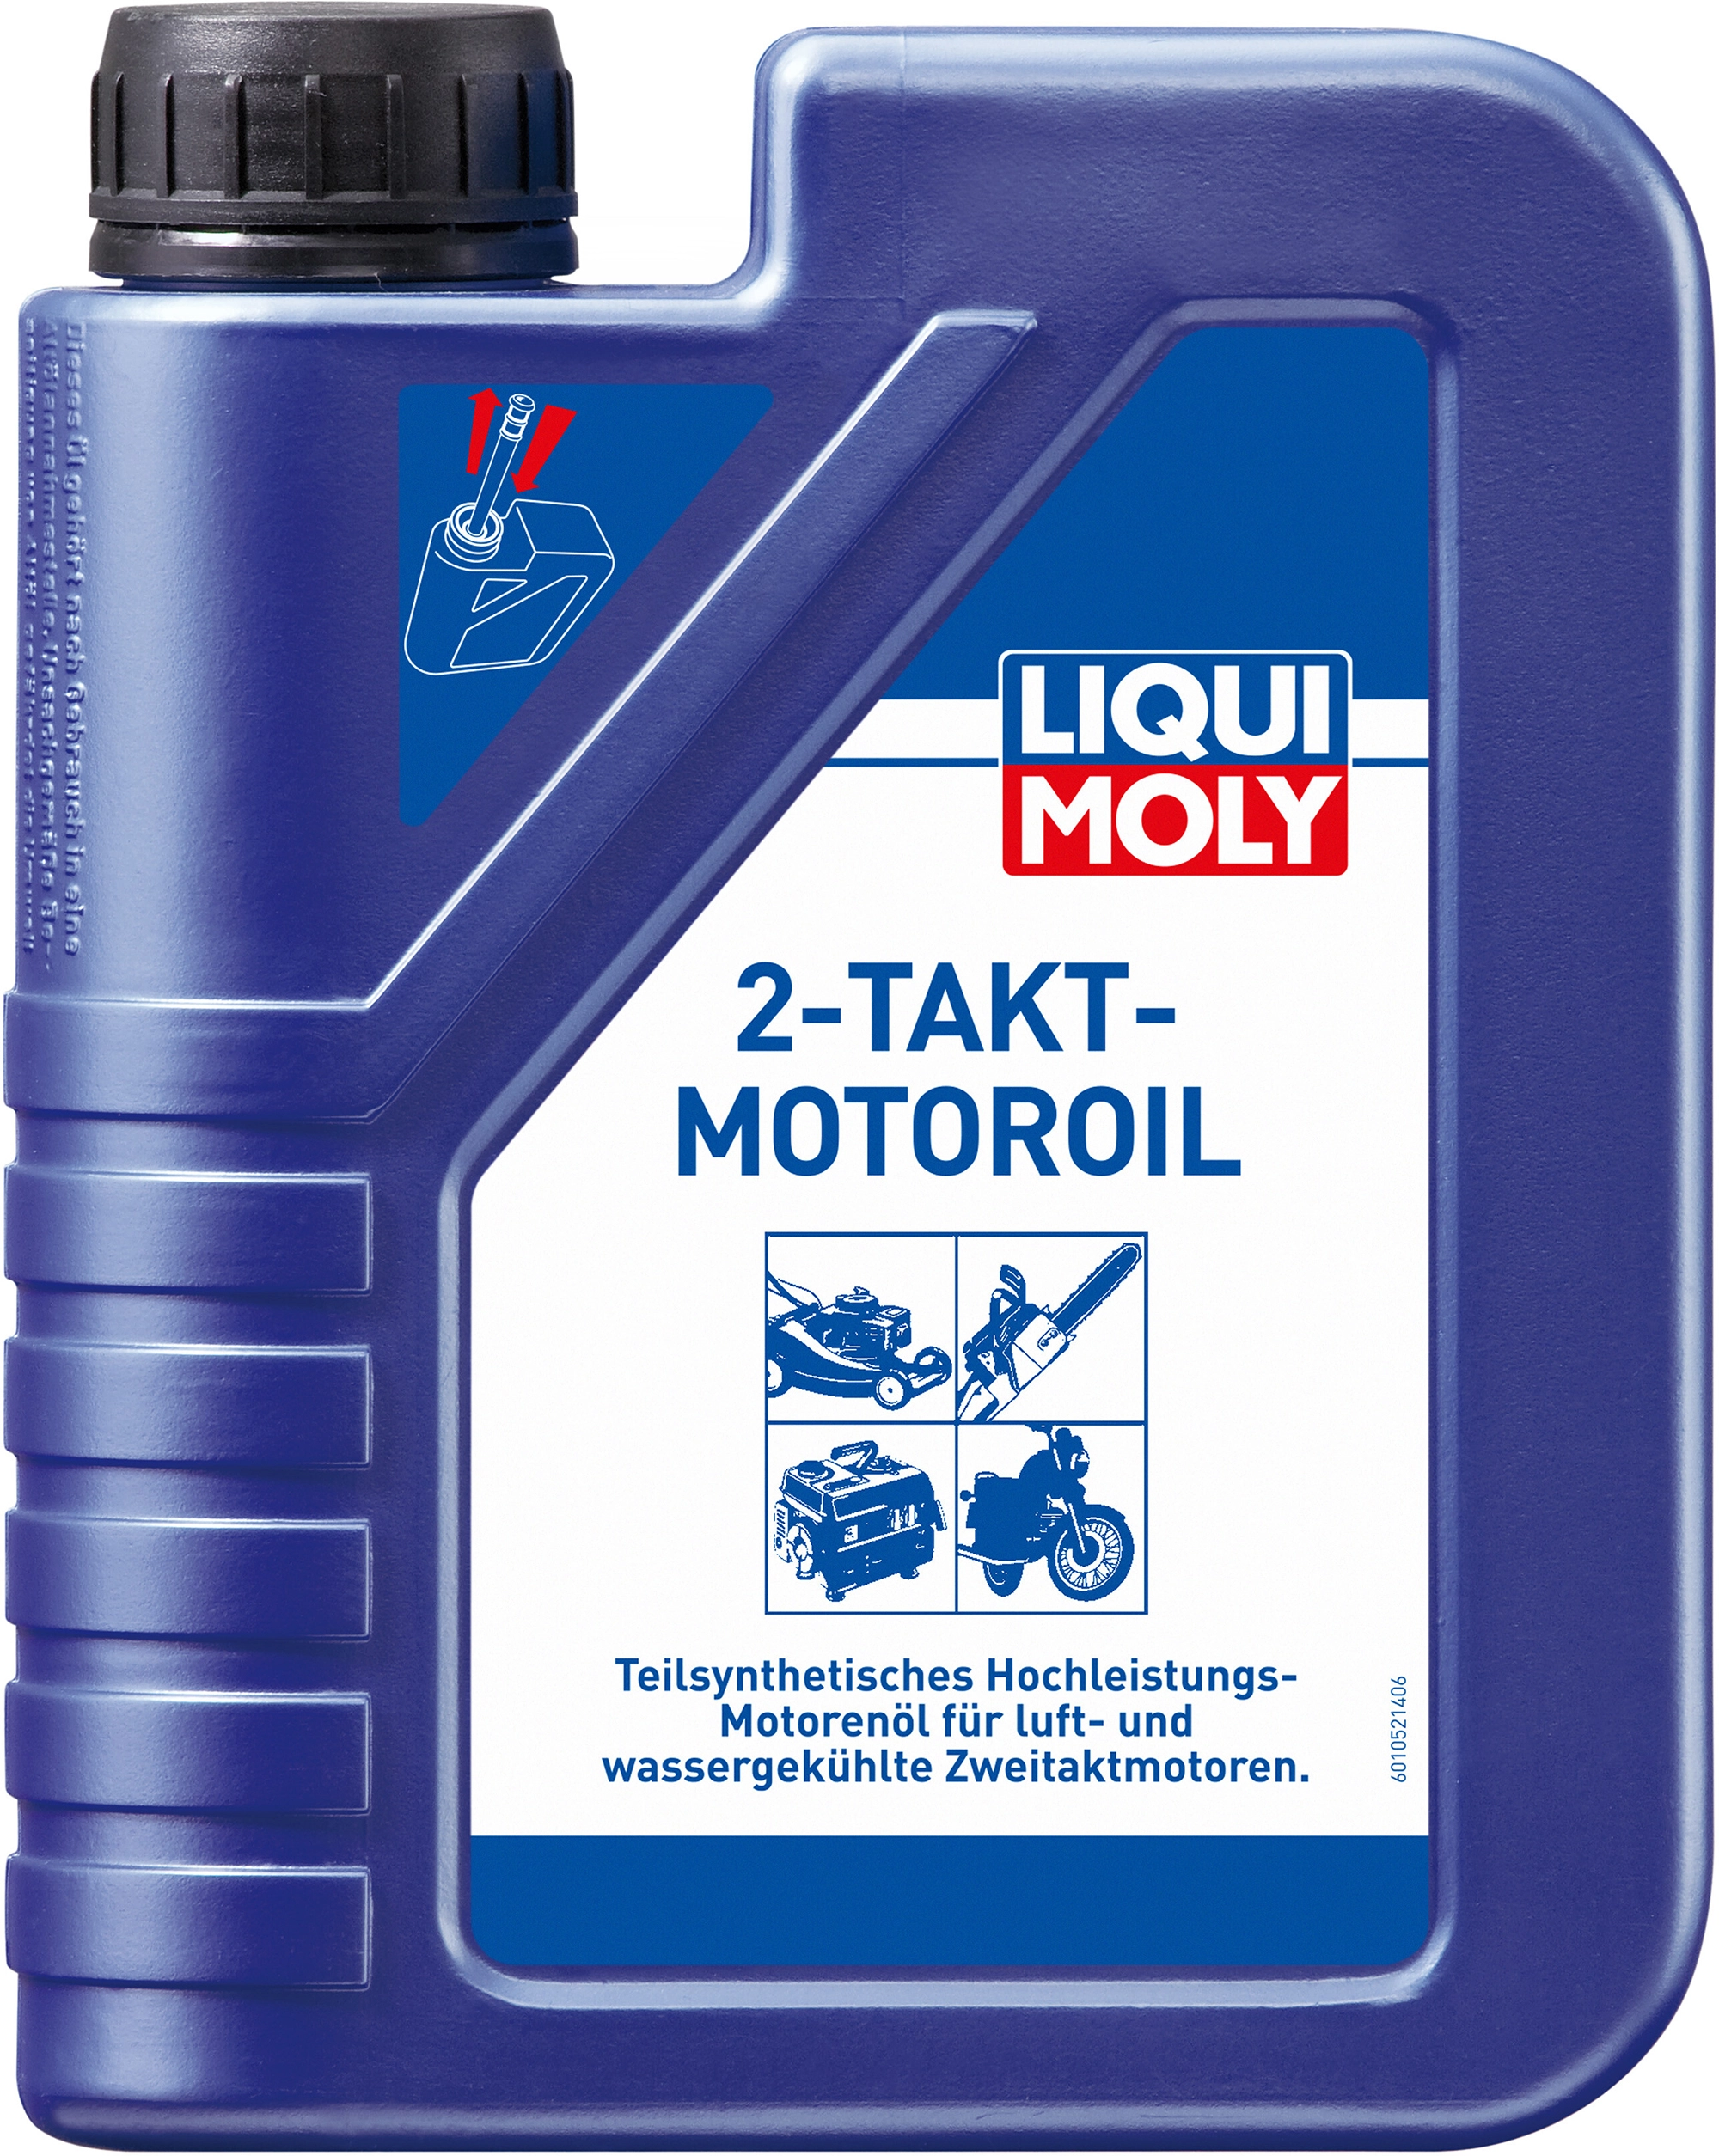 Ölkanister LIQUI MOLY 55606 online kaufen